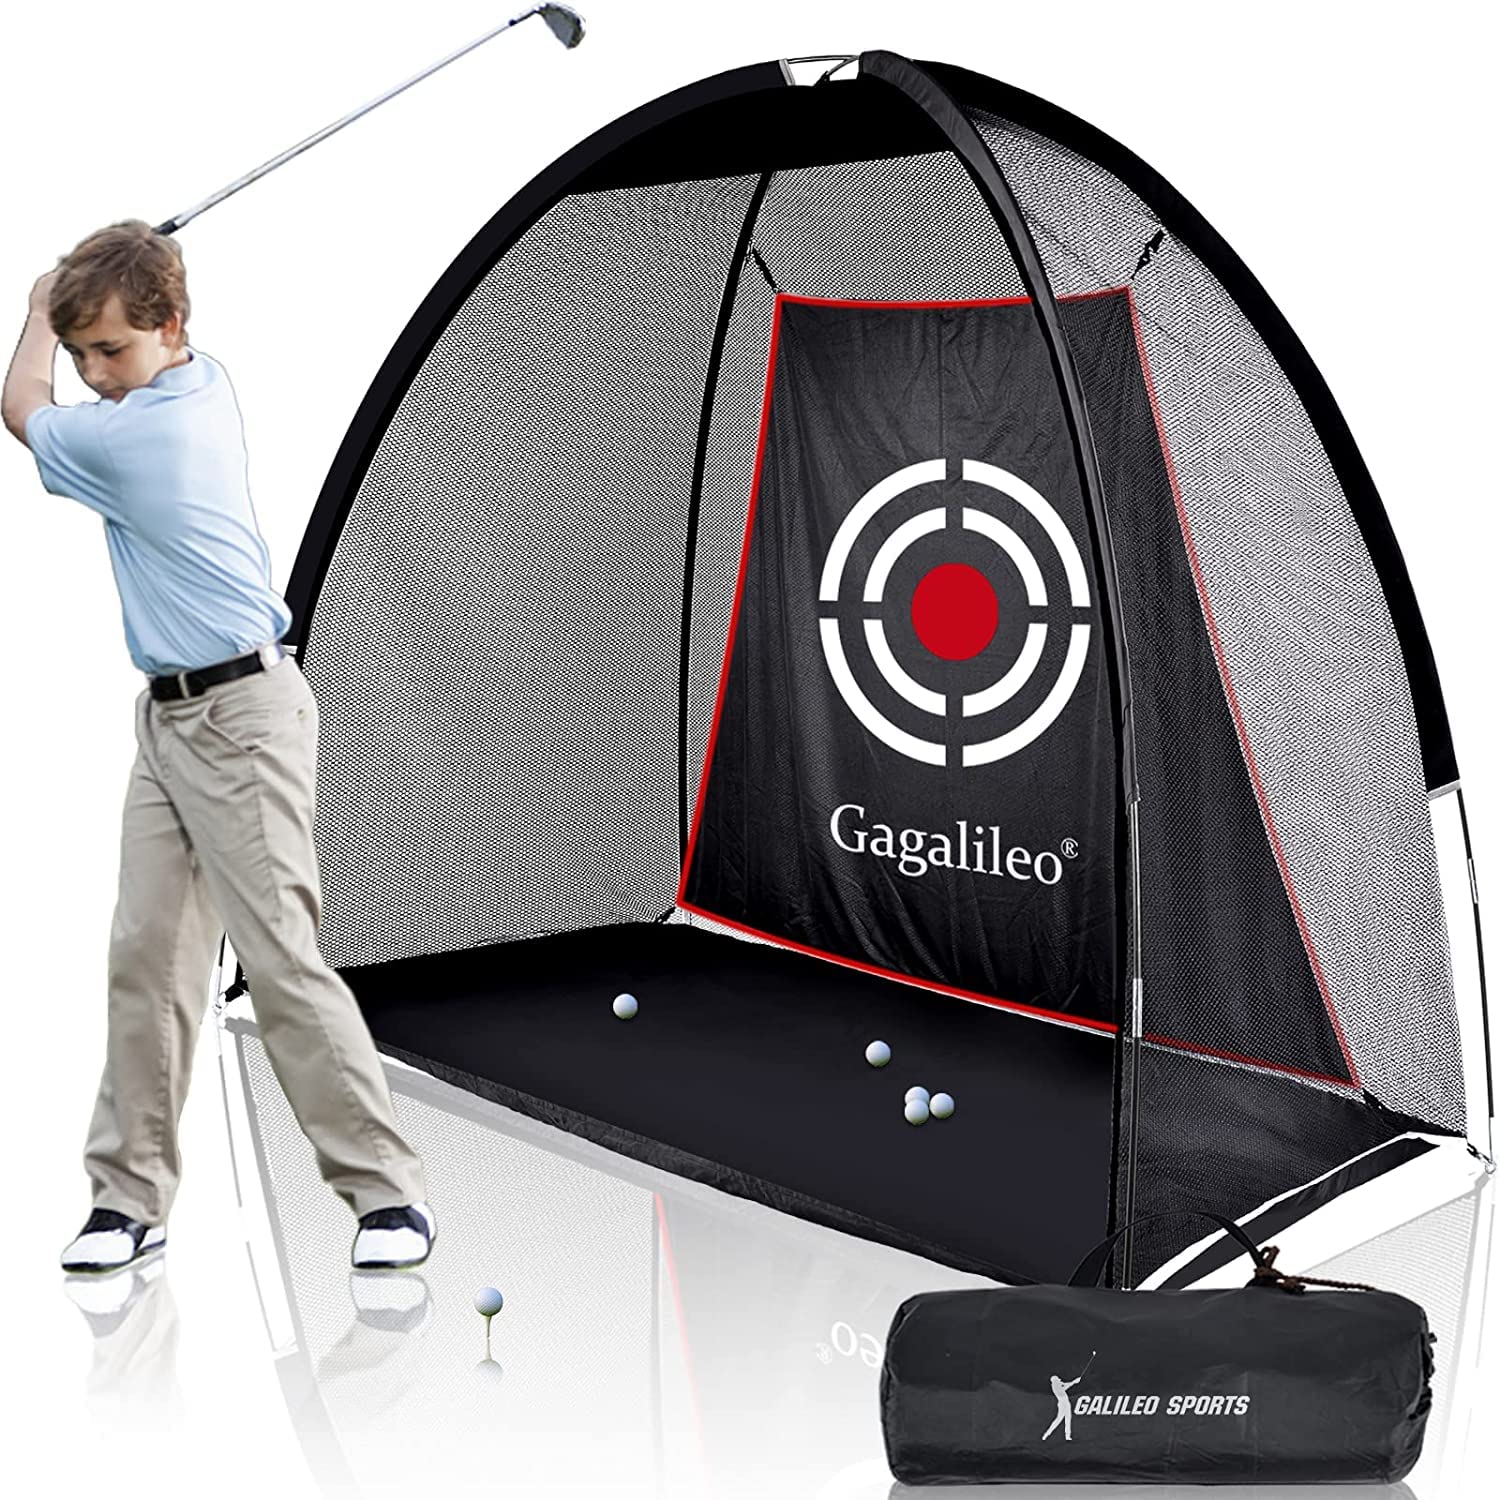 Gagalileo ゴルフネット 2x1.5x1m 室内屋外 練習用ネット 設置簡単 キャリーバッグ付き